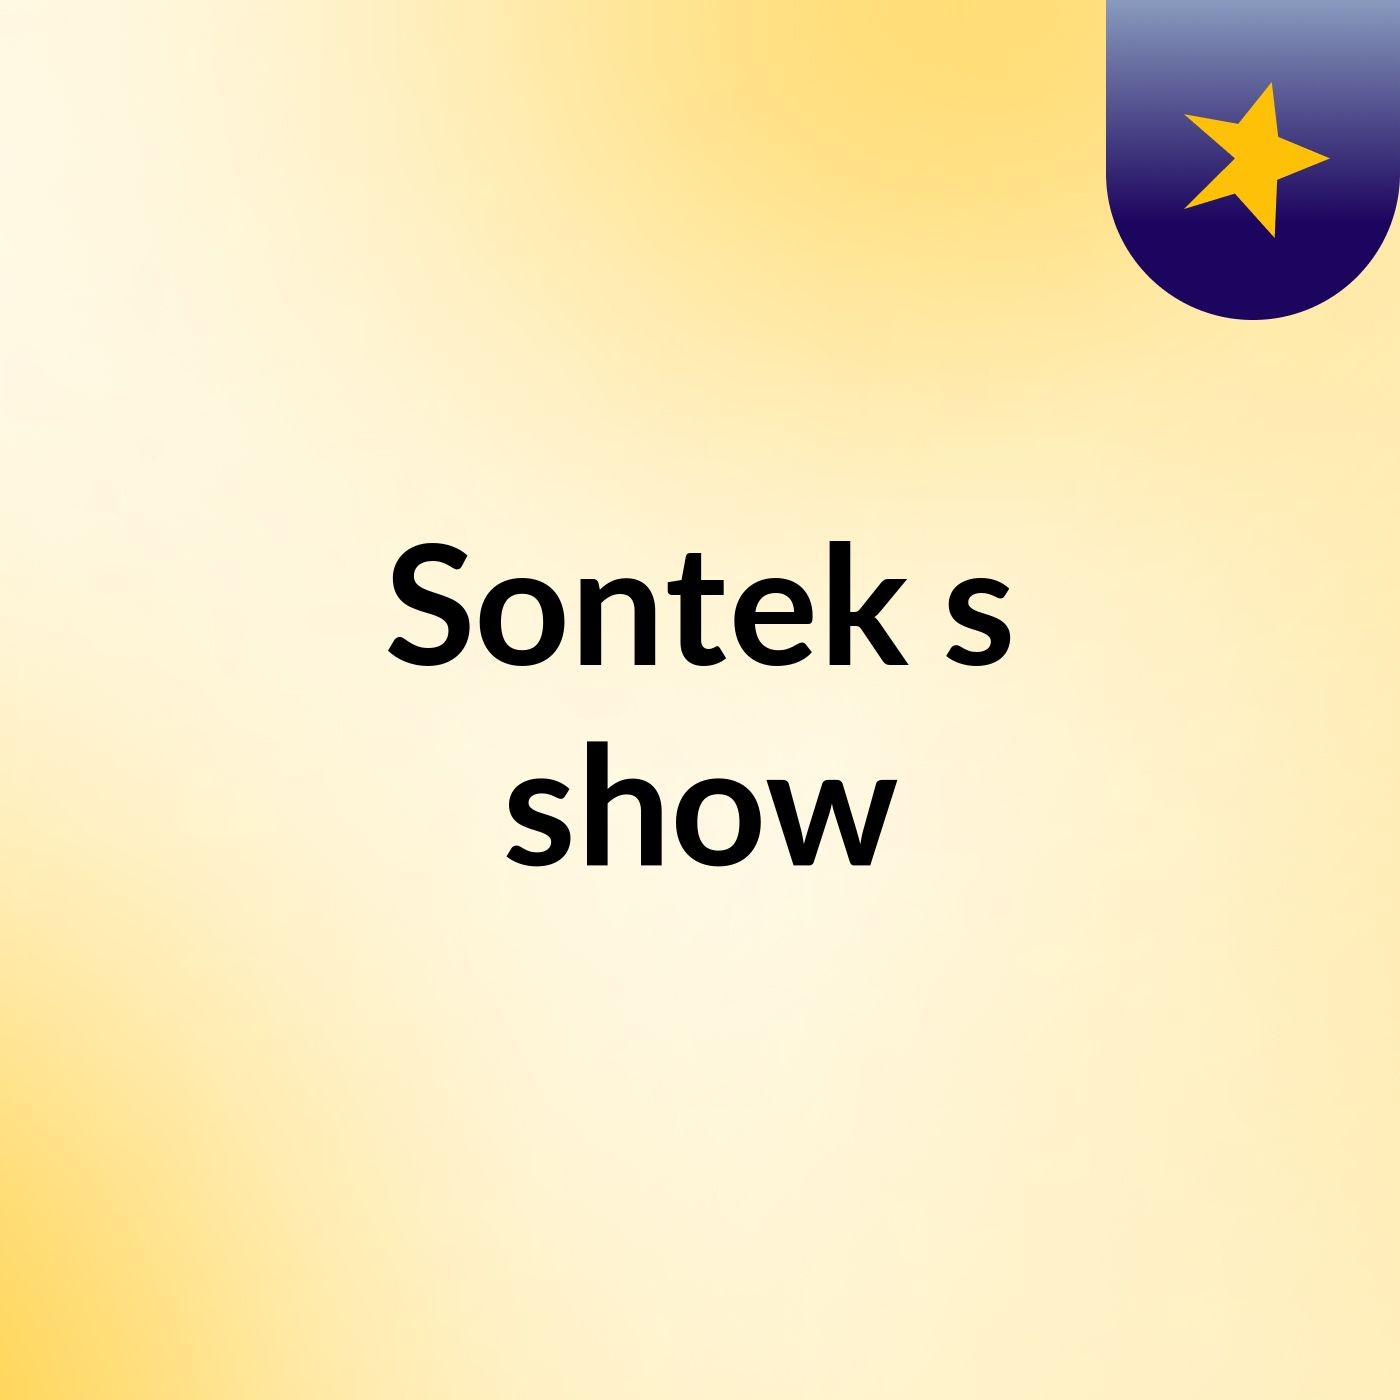 Sontek's show